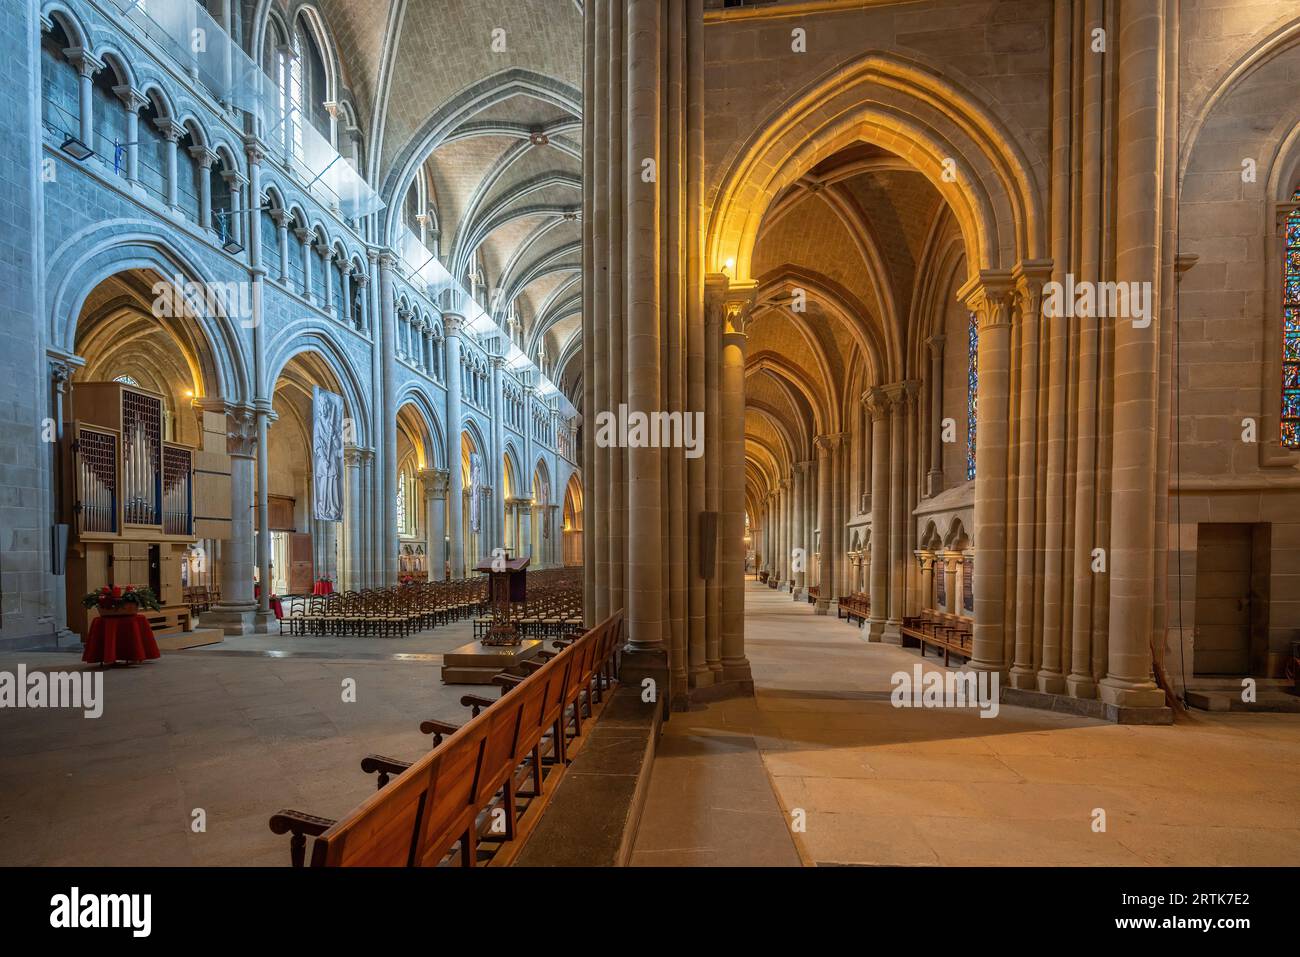 Intérieur de la cathédrale de Lausanne - Lausanne, Suisse Banque D'Images